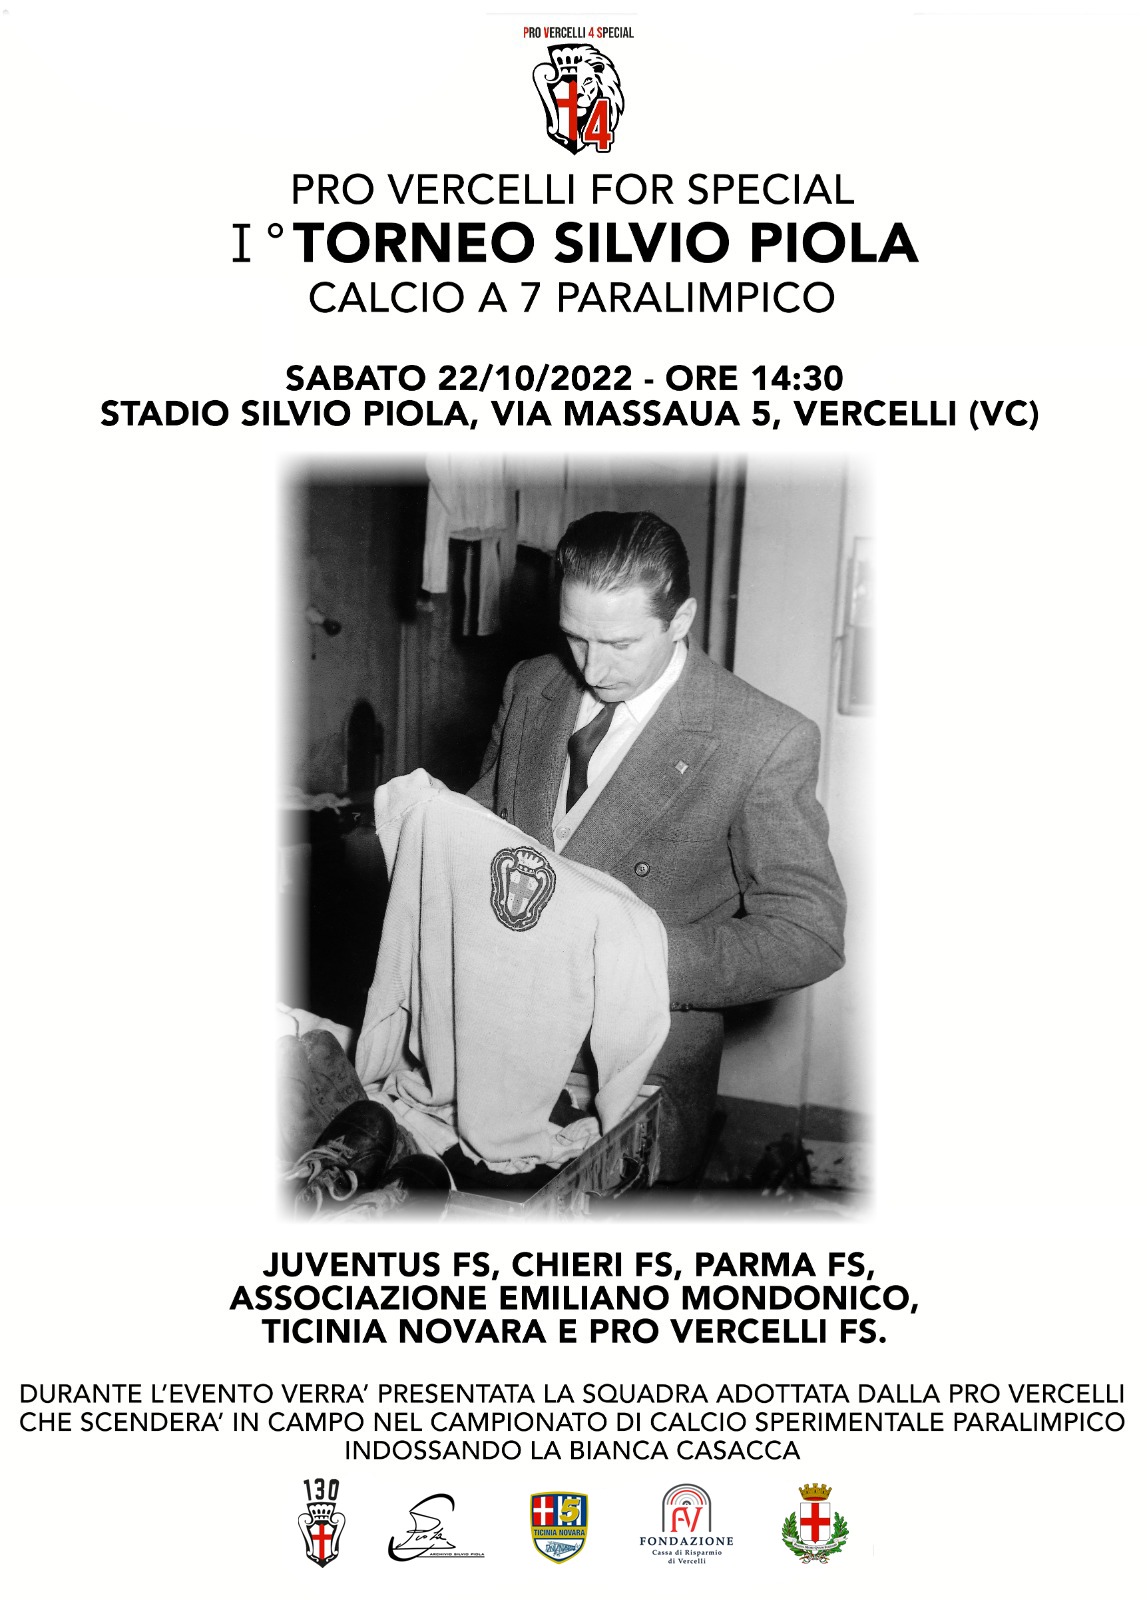 PRO VERCELLI FOR SPECIAL | PRIMO TORNEO SILVIO PIOLA